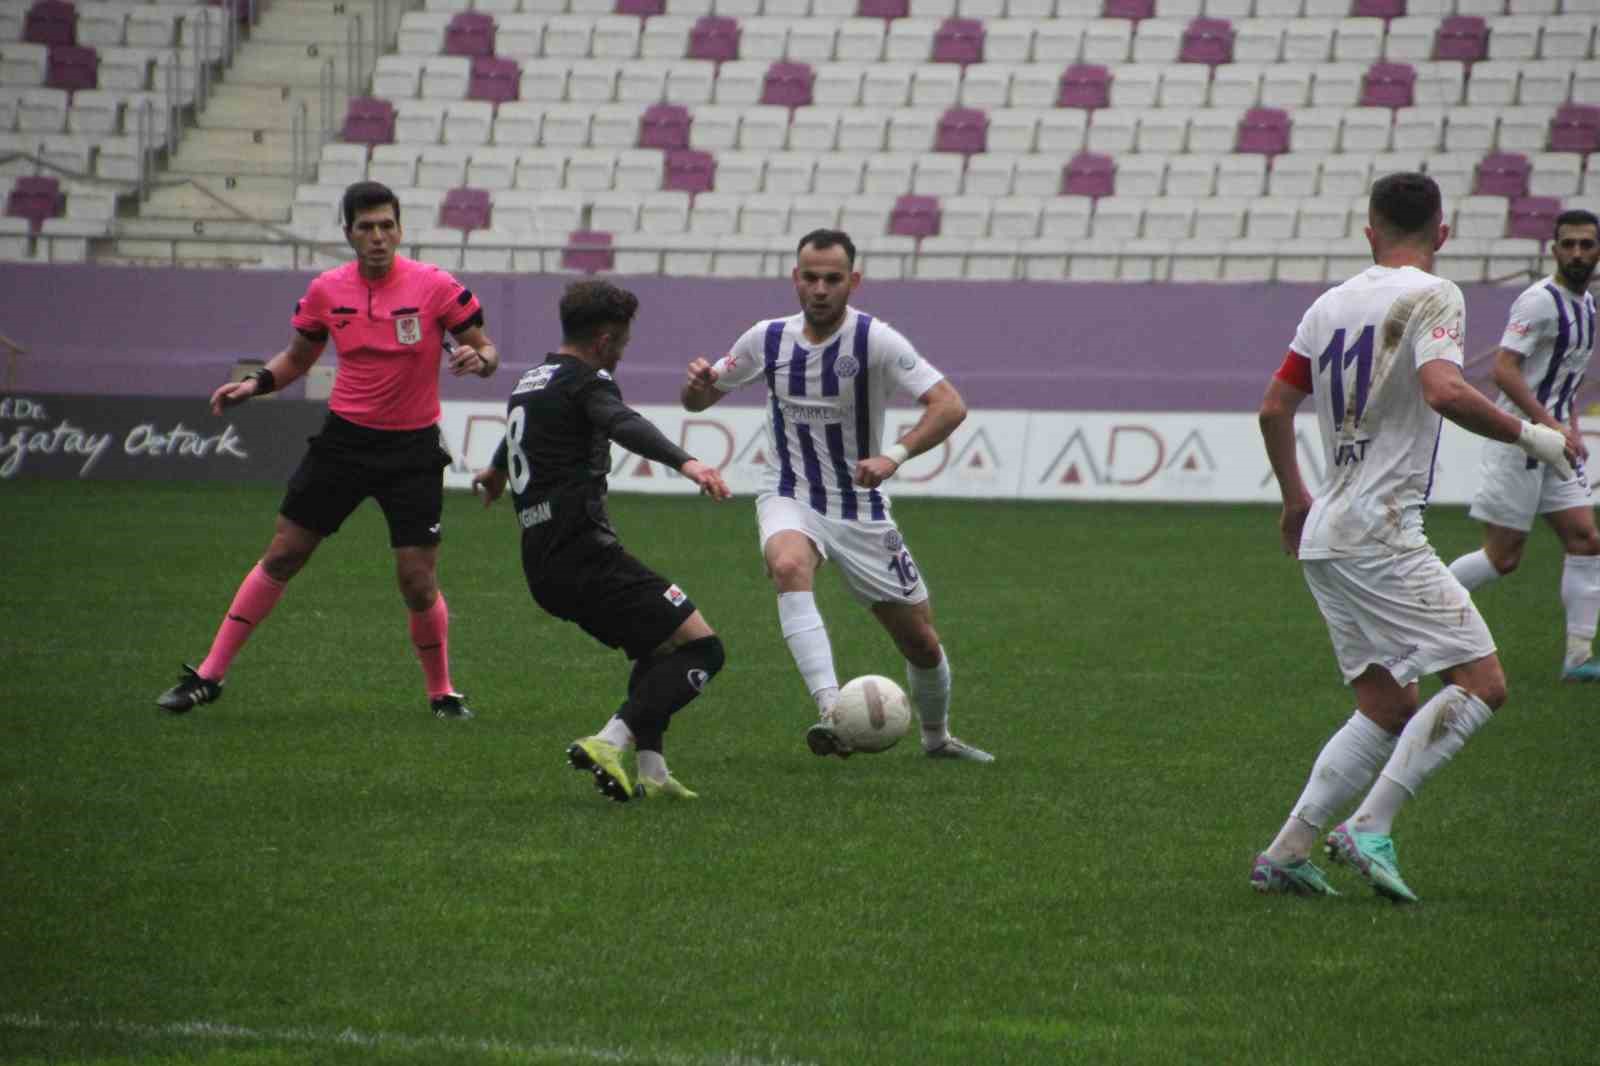 TFF 3. Lig: 52 Orduspor, Malatya Arguvanspor karşısında 1-0 galip geldi.